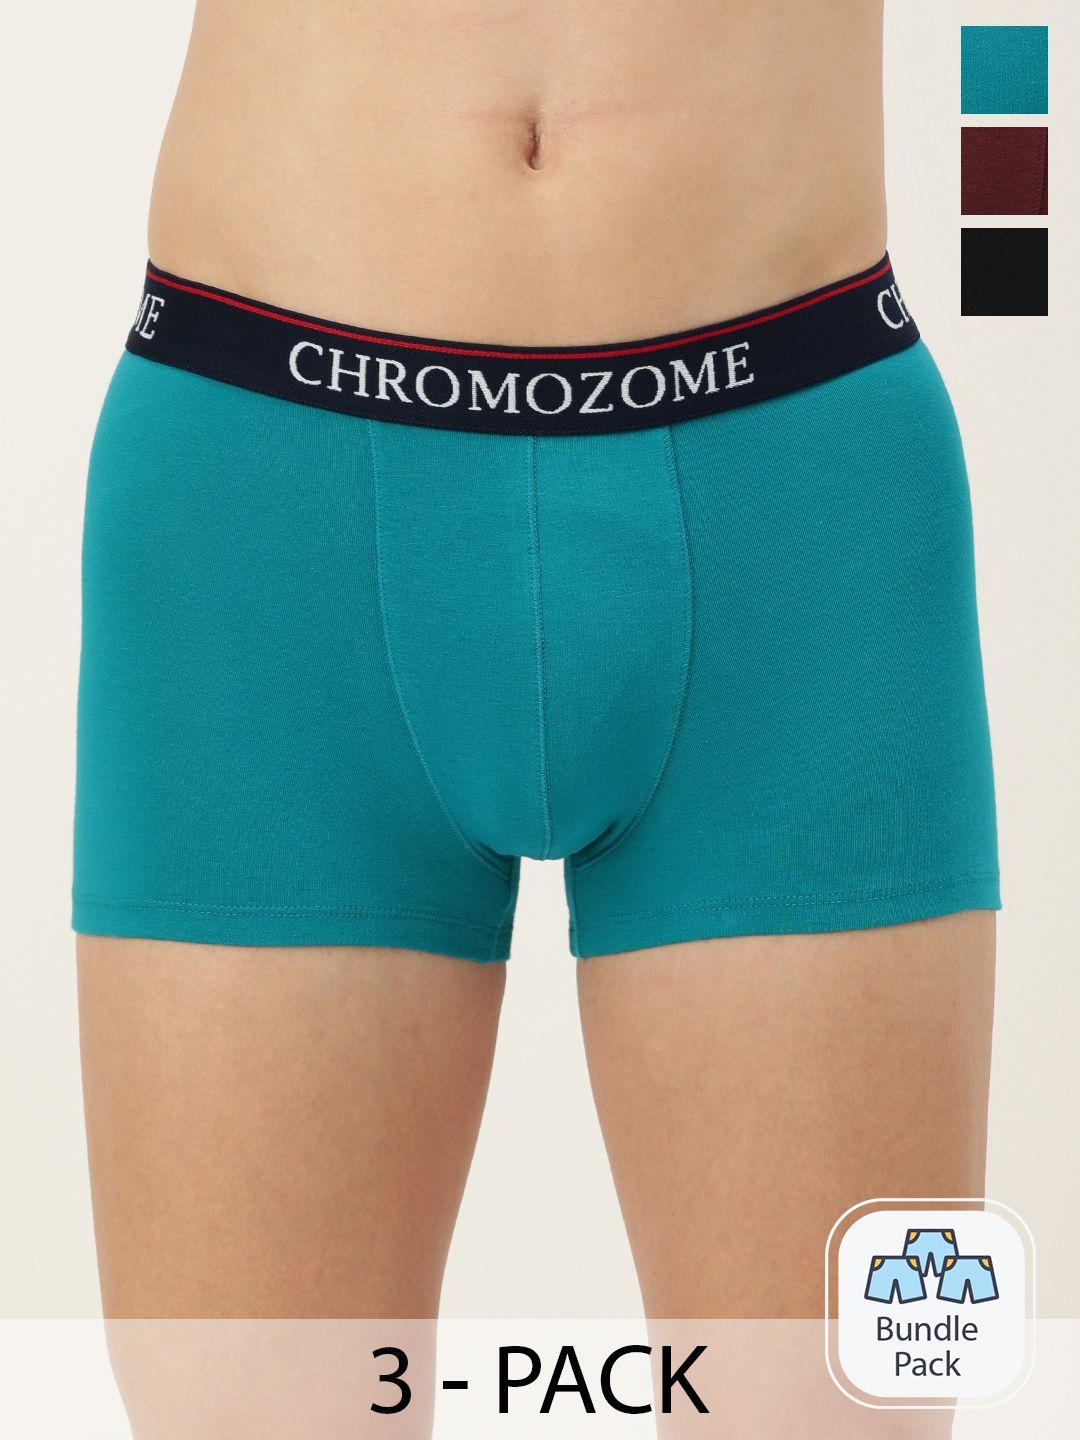 chromozome men pack of 3 mid-rise trunks 8902733650762